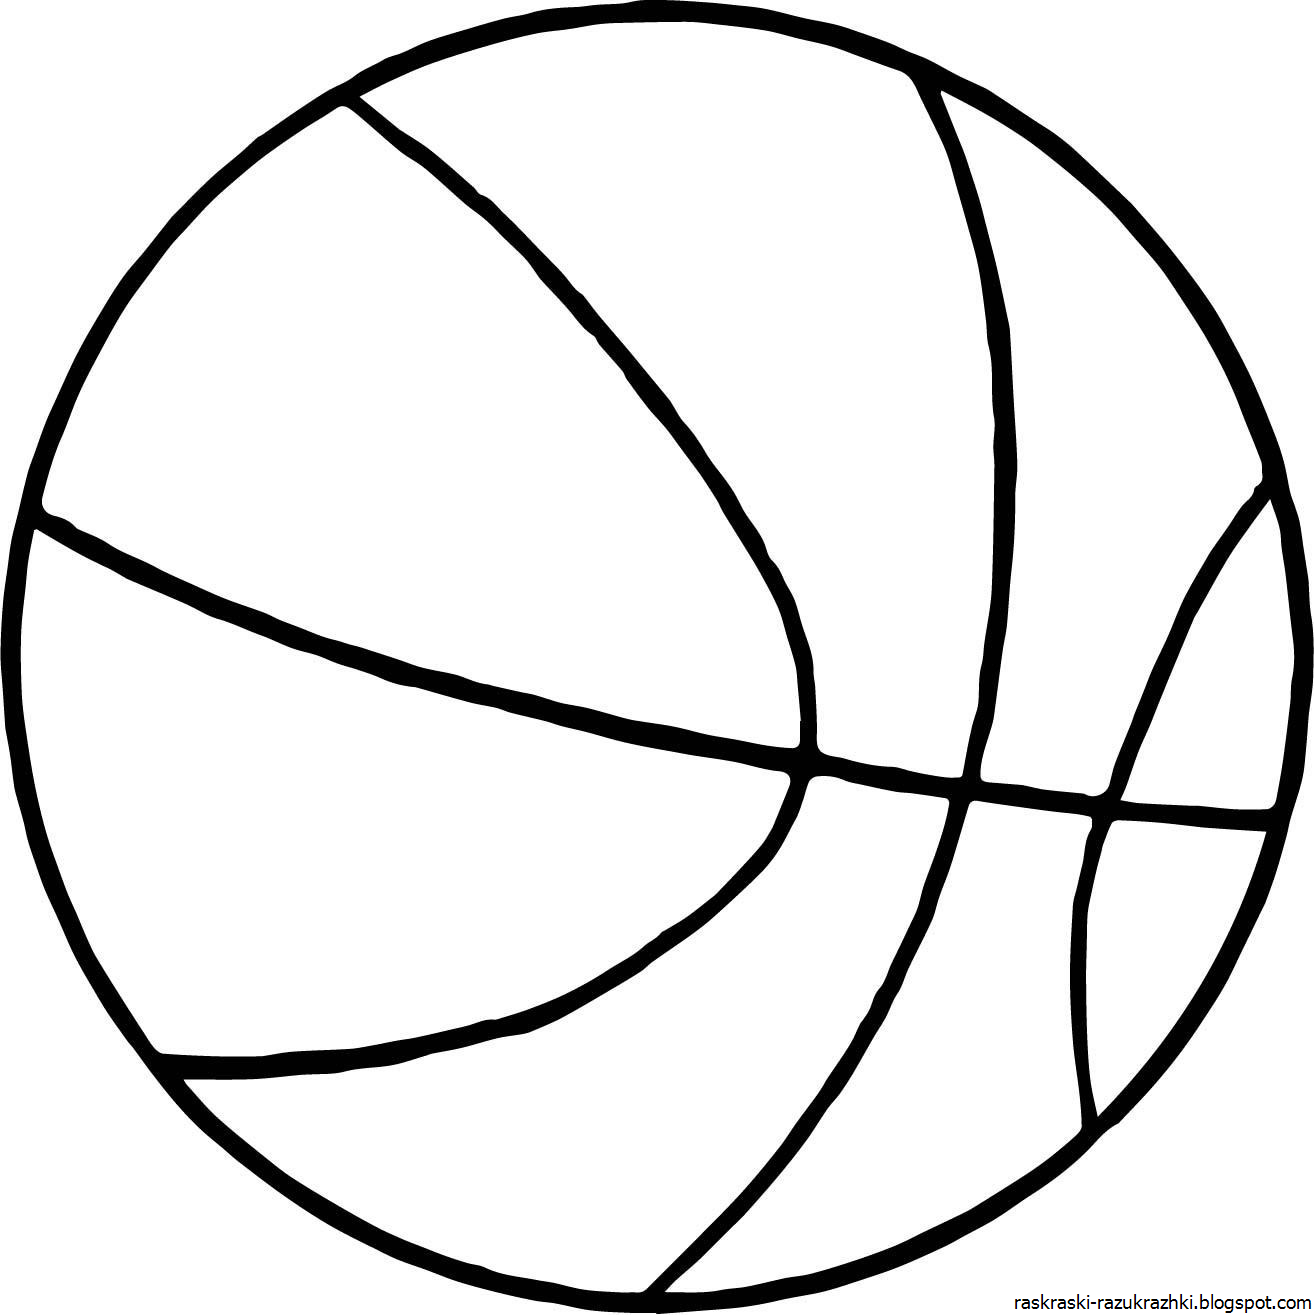 Мячик картинка раскраска. Мяч раскраска. Баскетбольный мяч раскраска. Мяч раскраска для детей. Контур мяча для раскрашивания.